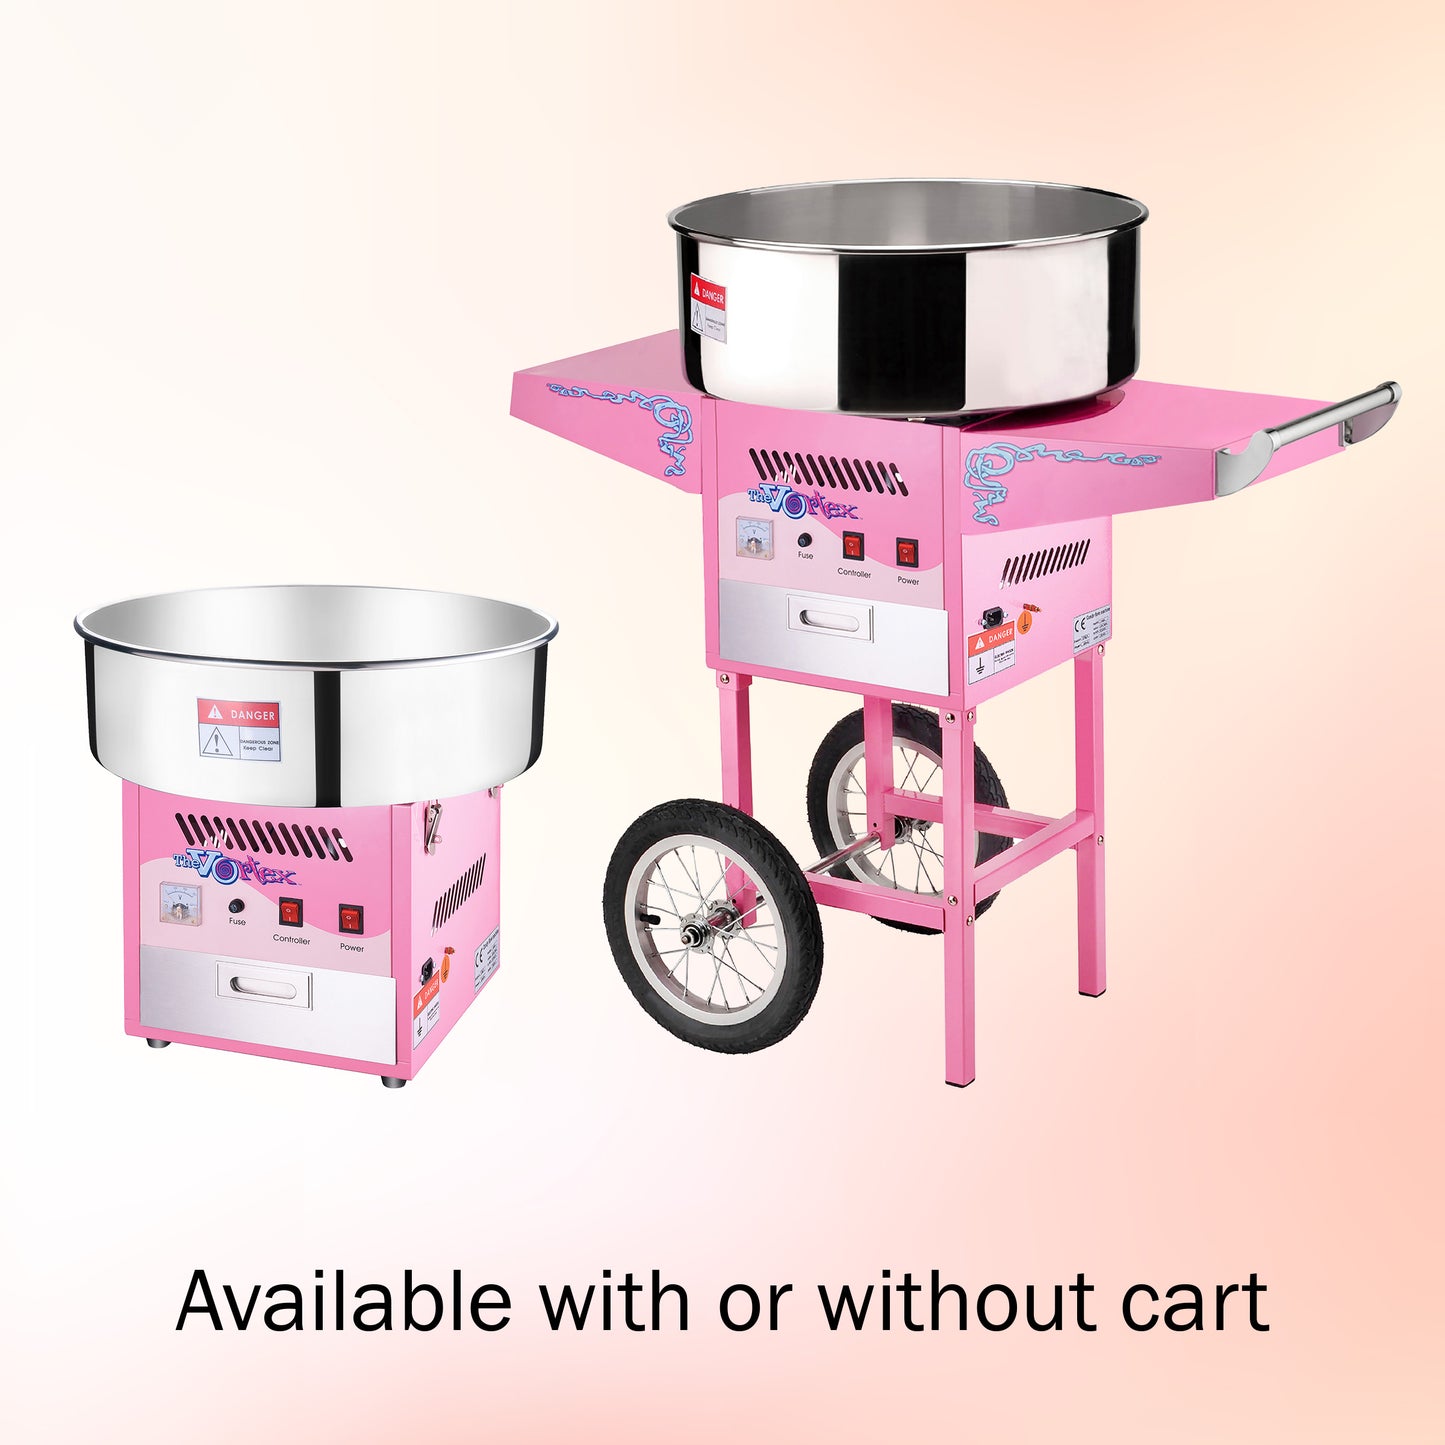 Vortex Cotton Candy Machine - Pink